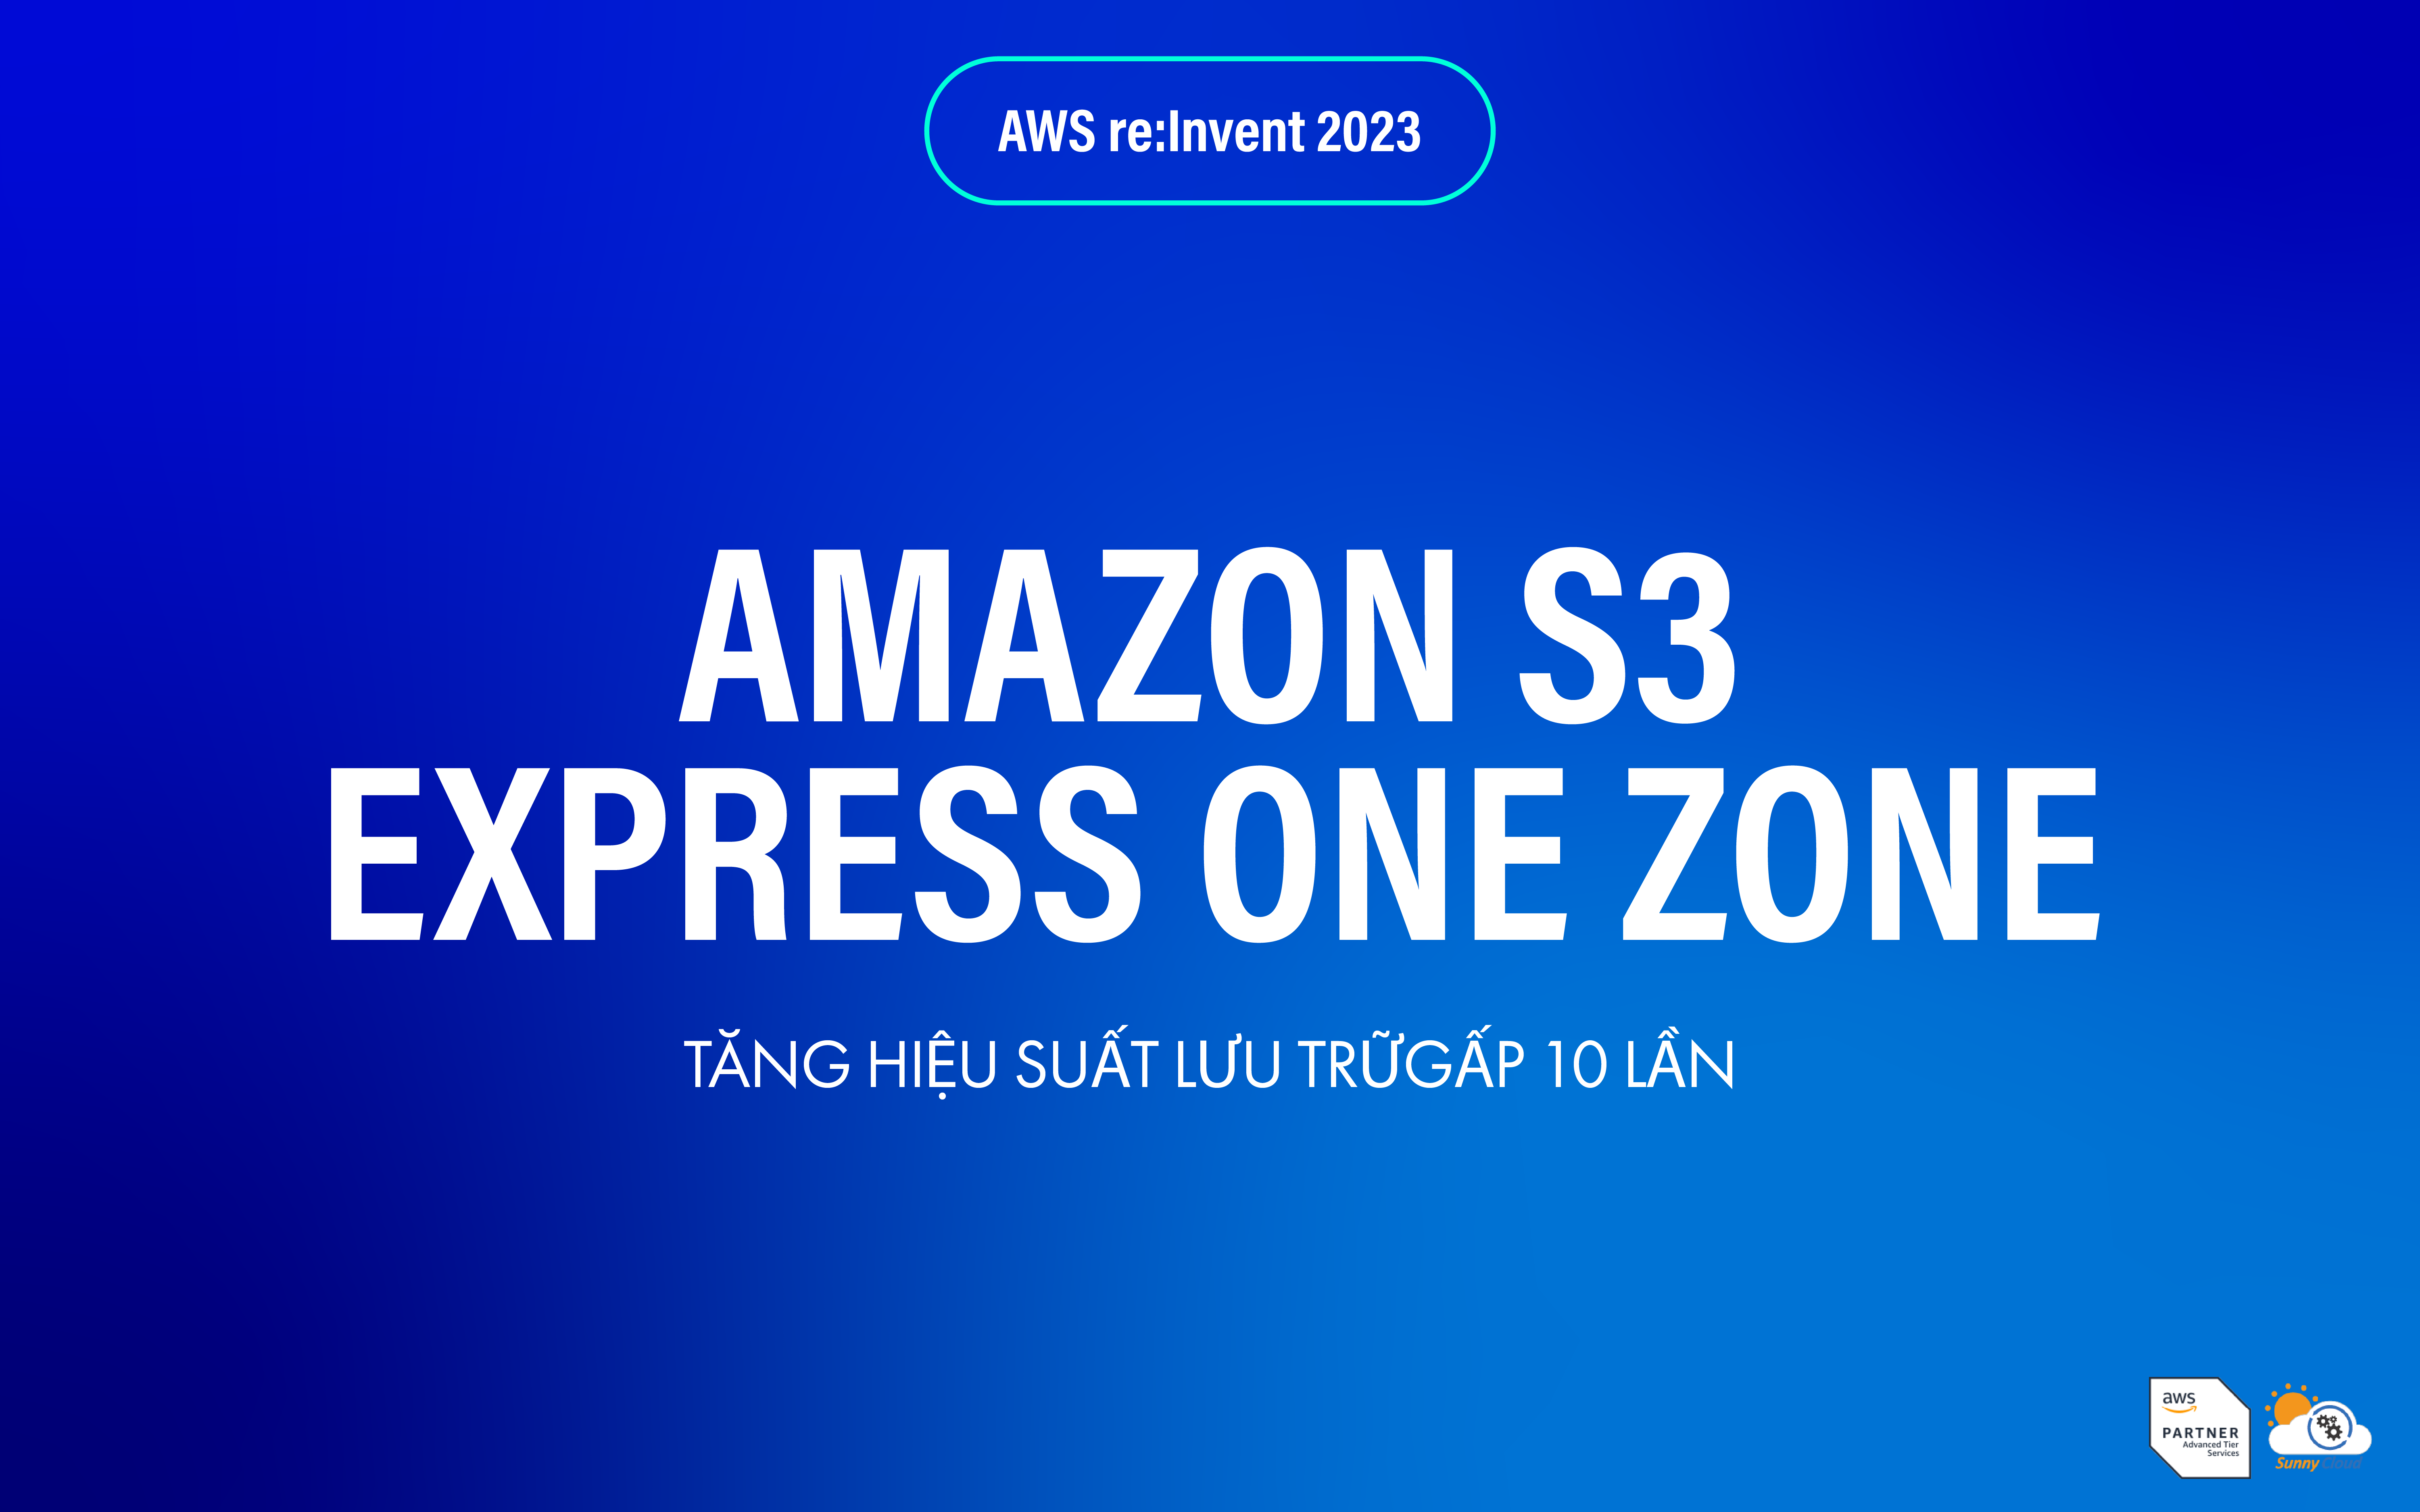 Tăng hiệu suất gấp 10 lần với Amazon S3 Express One Zone